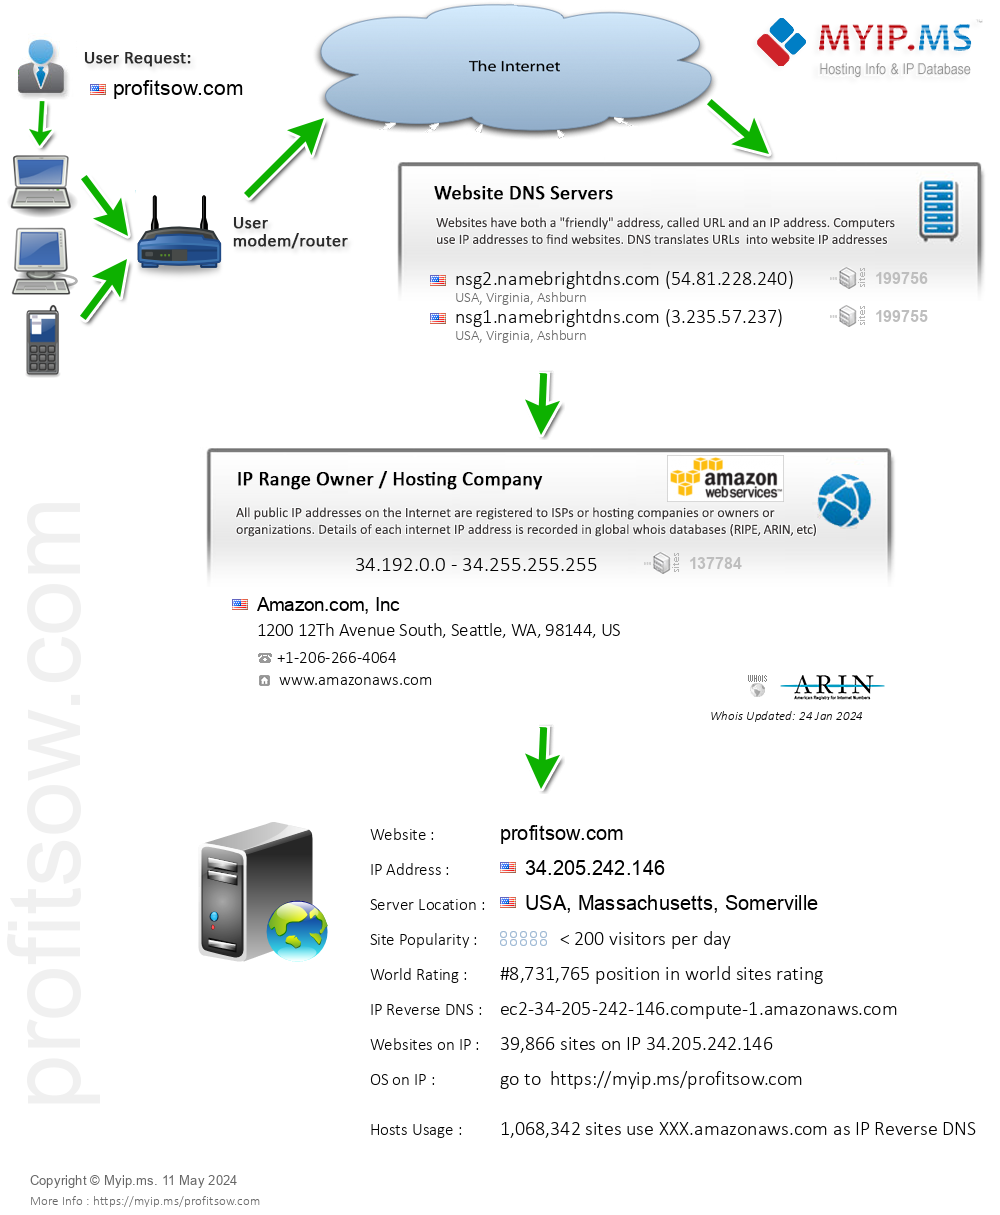 Profitsow.com - Website Hosting Visual IP Diagram